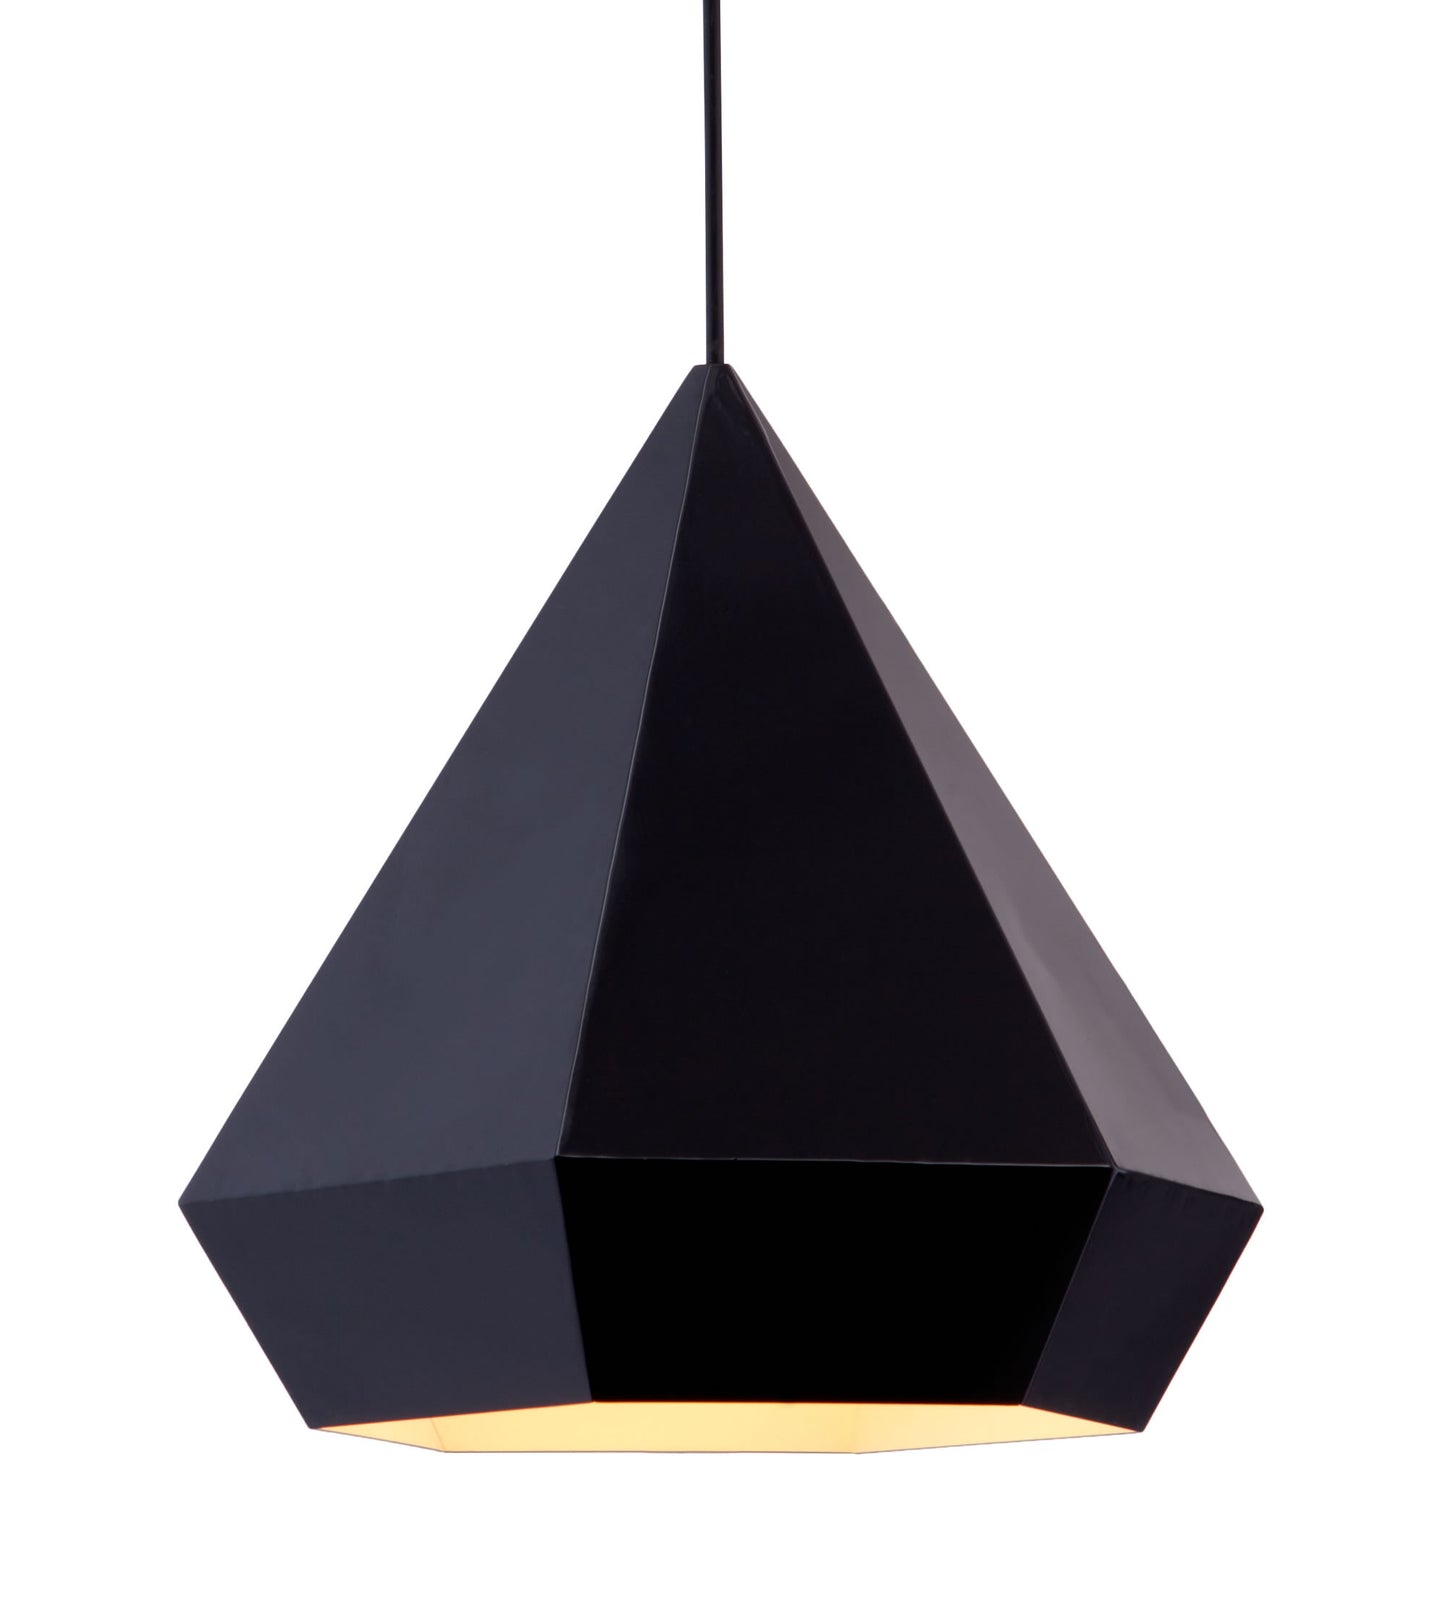 13.8" x 13.8" x 13" Black, Painted Metal, Steel, Ceiling Lamp